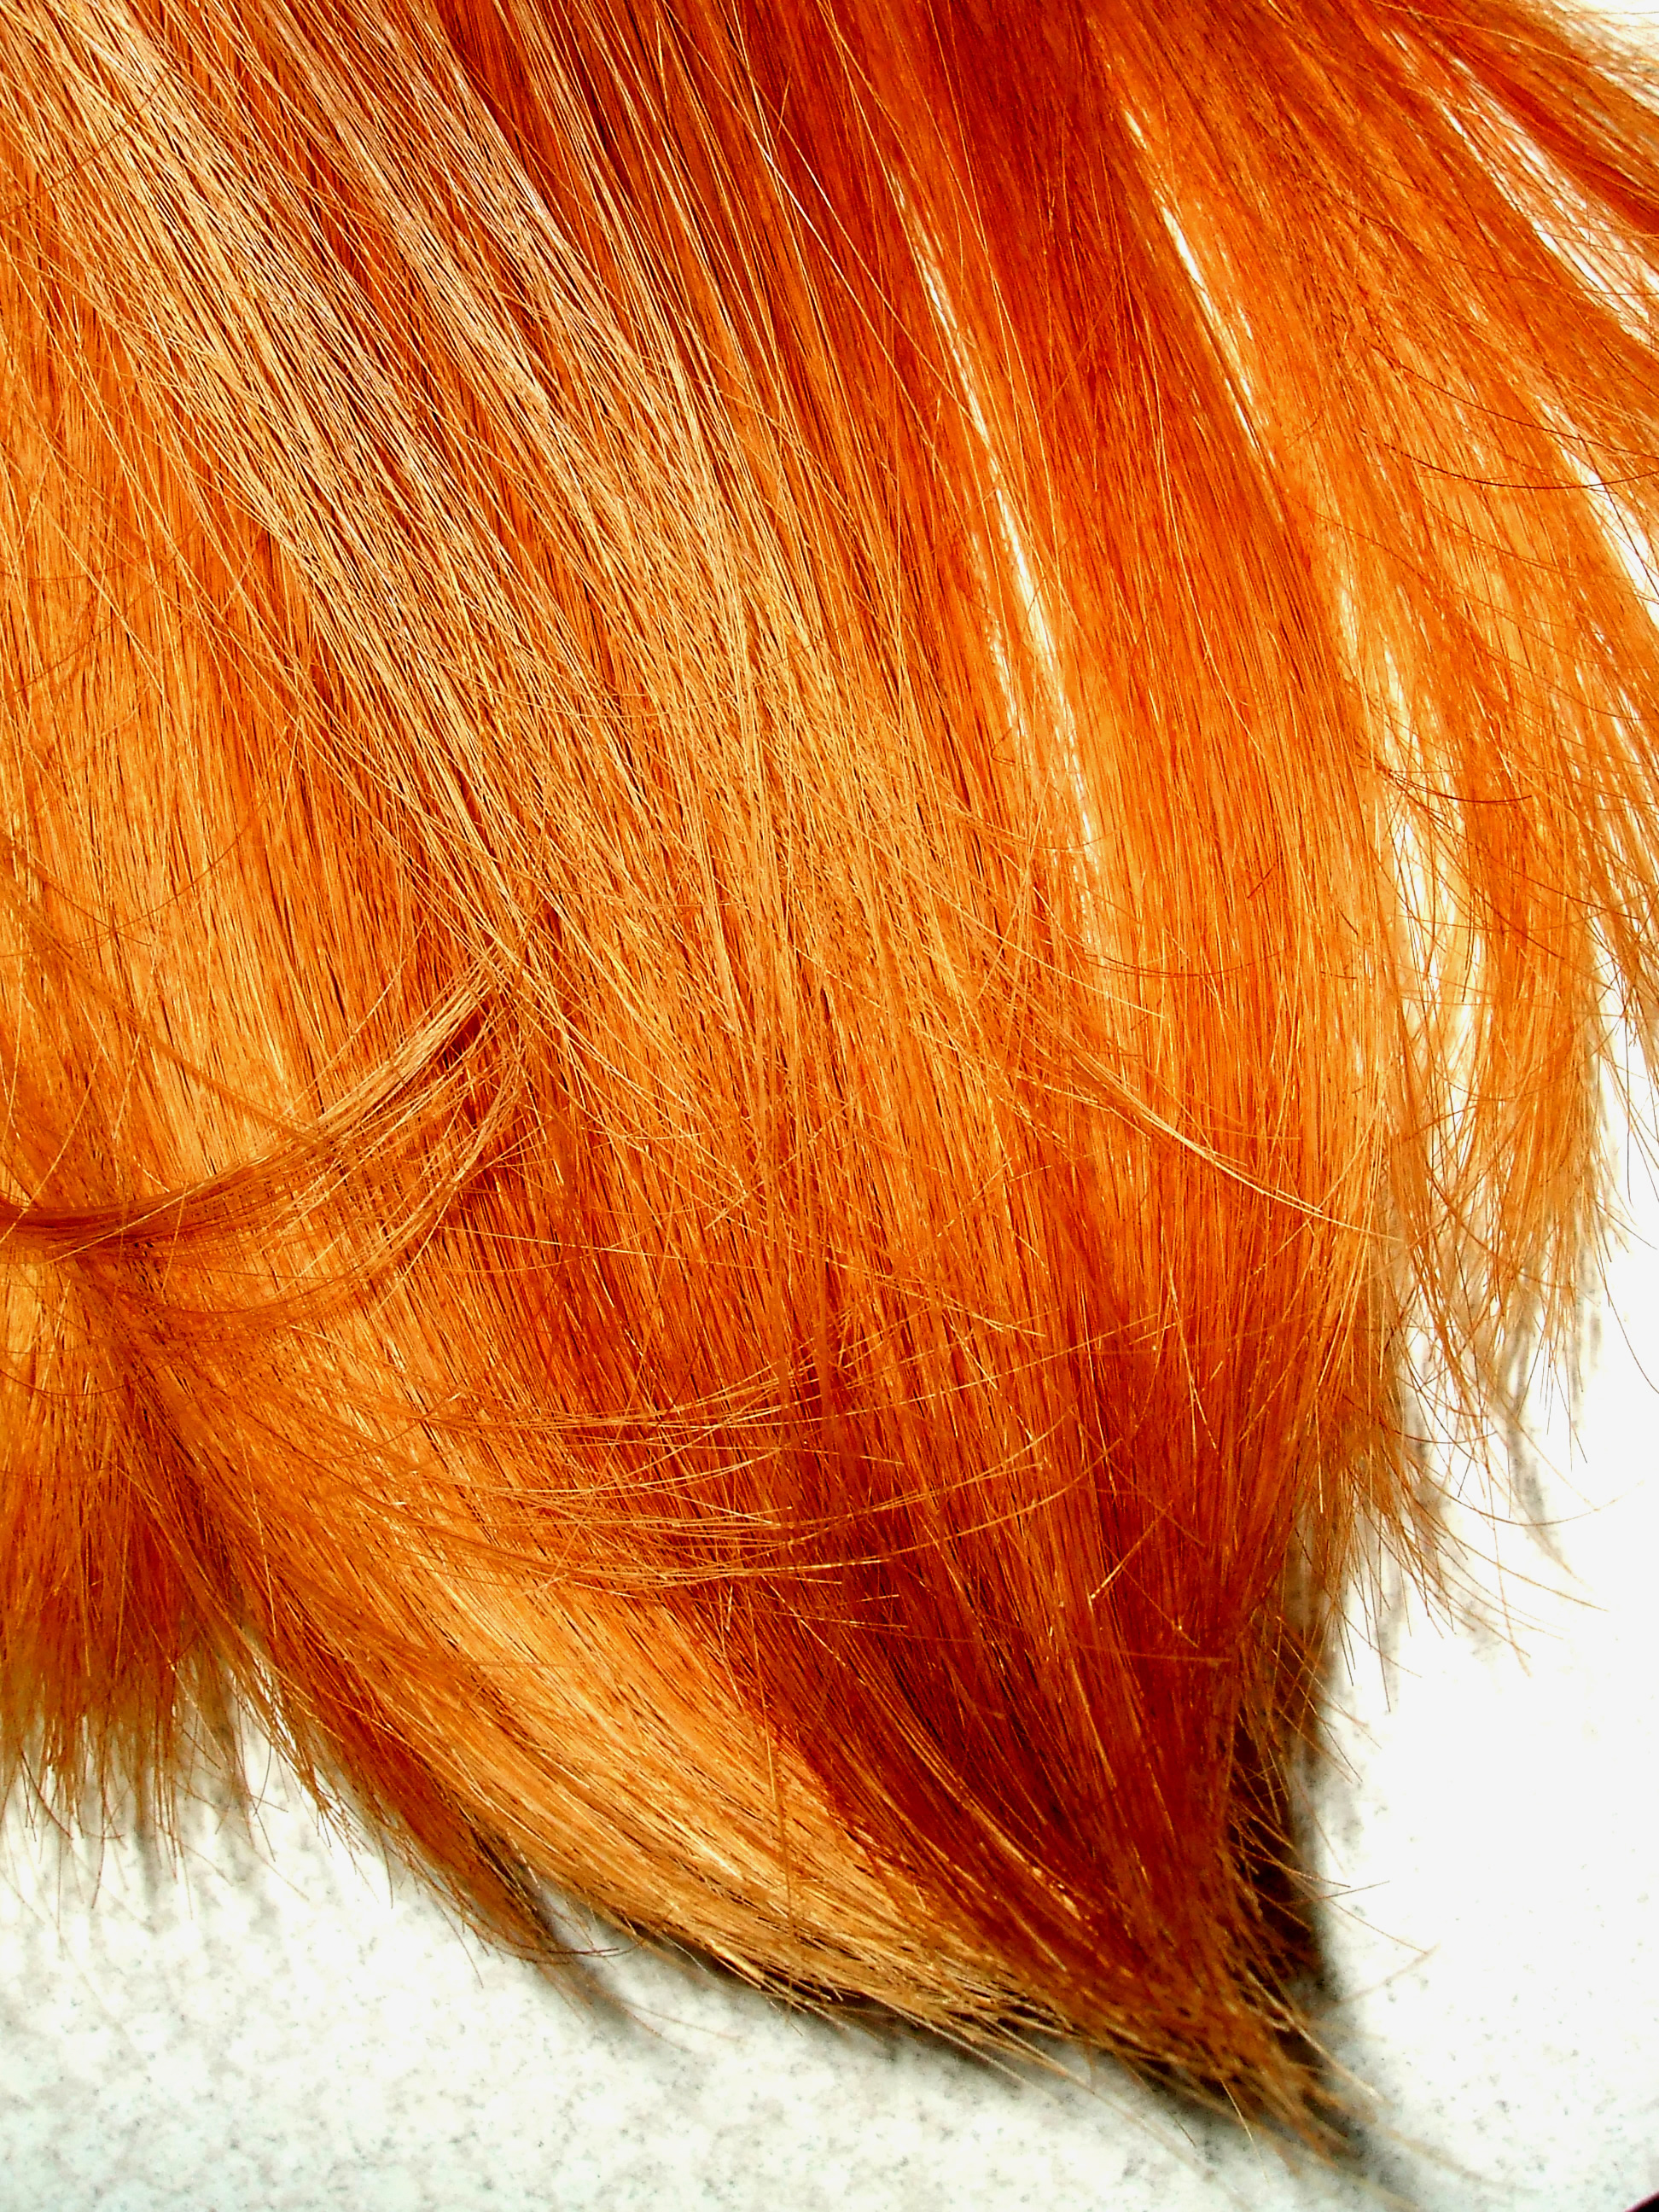 hair texture, background, orange hair texture, background